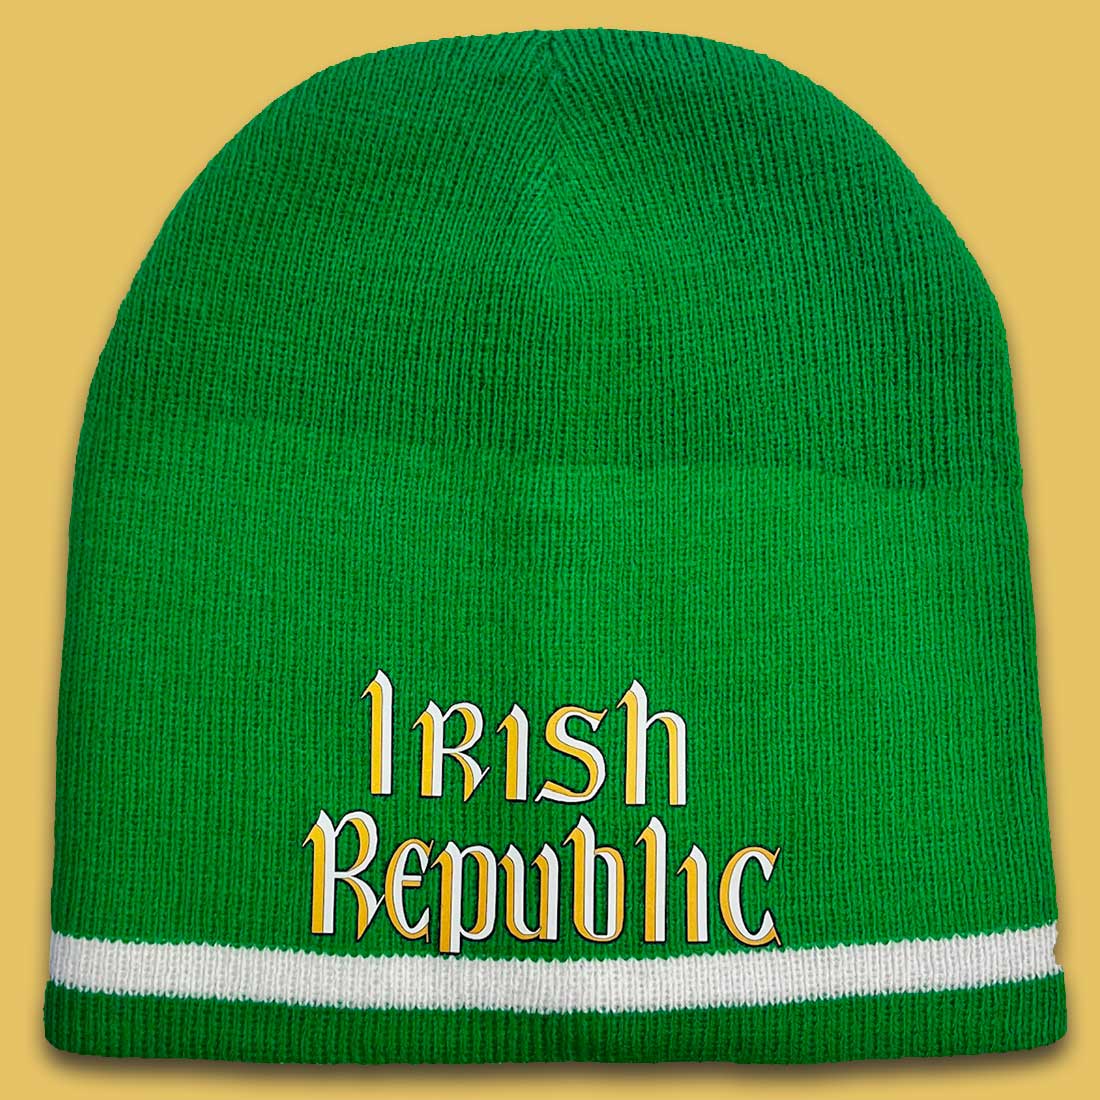 Irish Republic 1916 Green Beanie